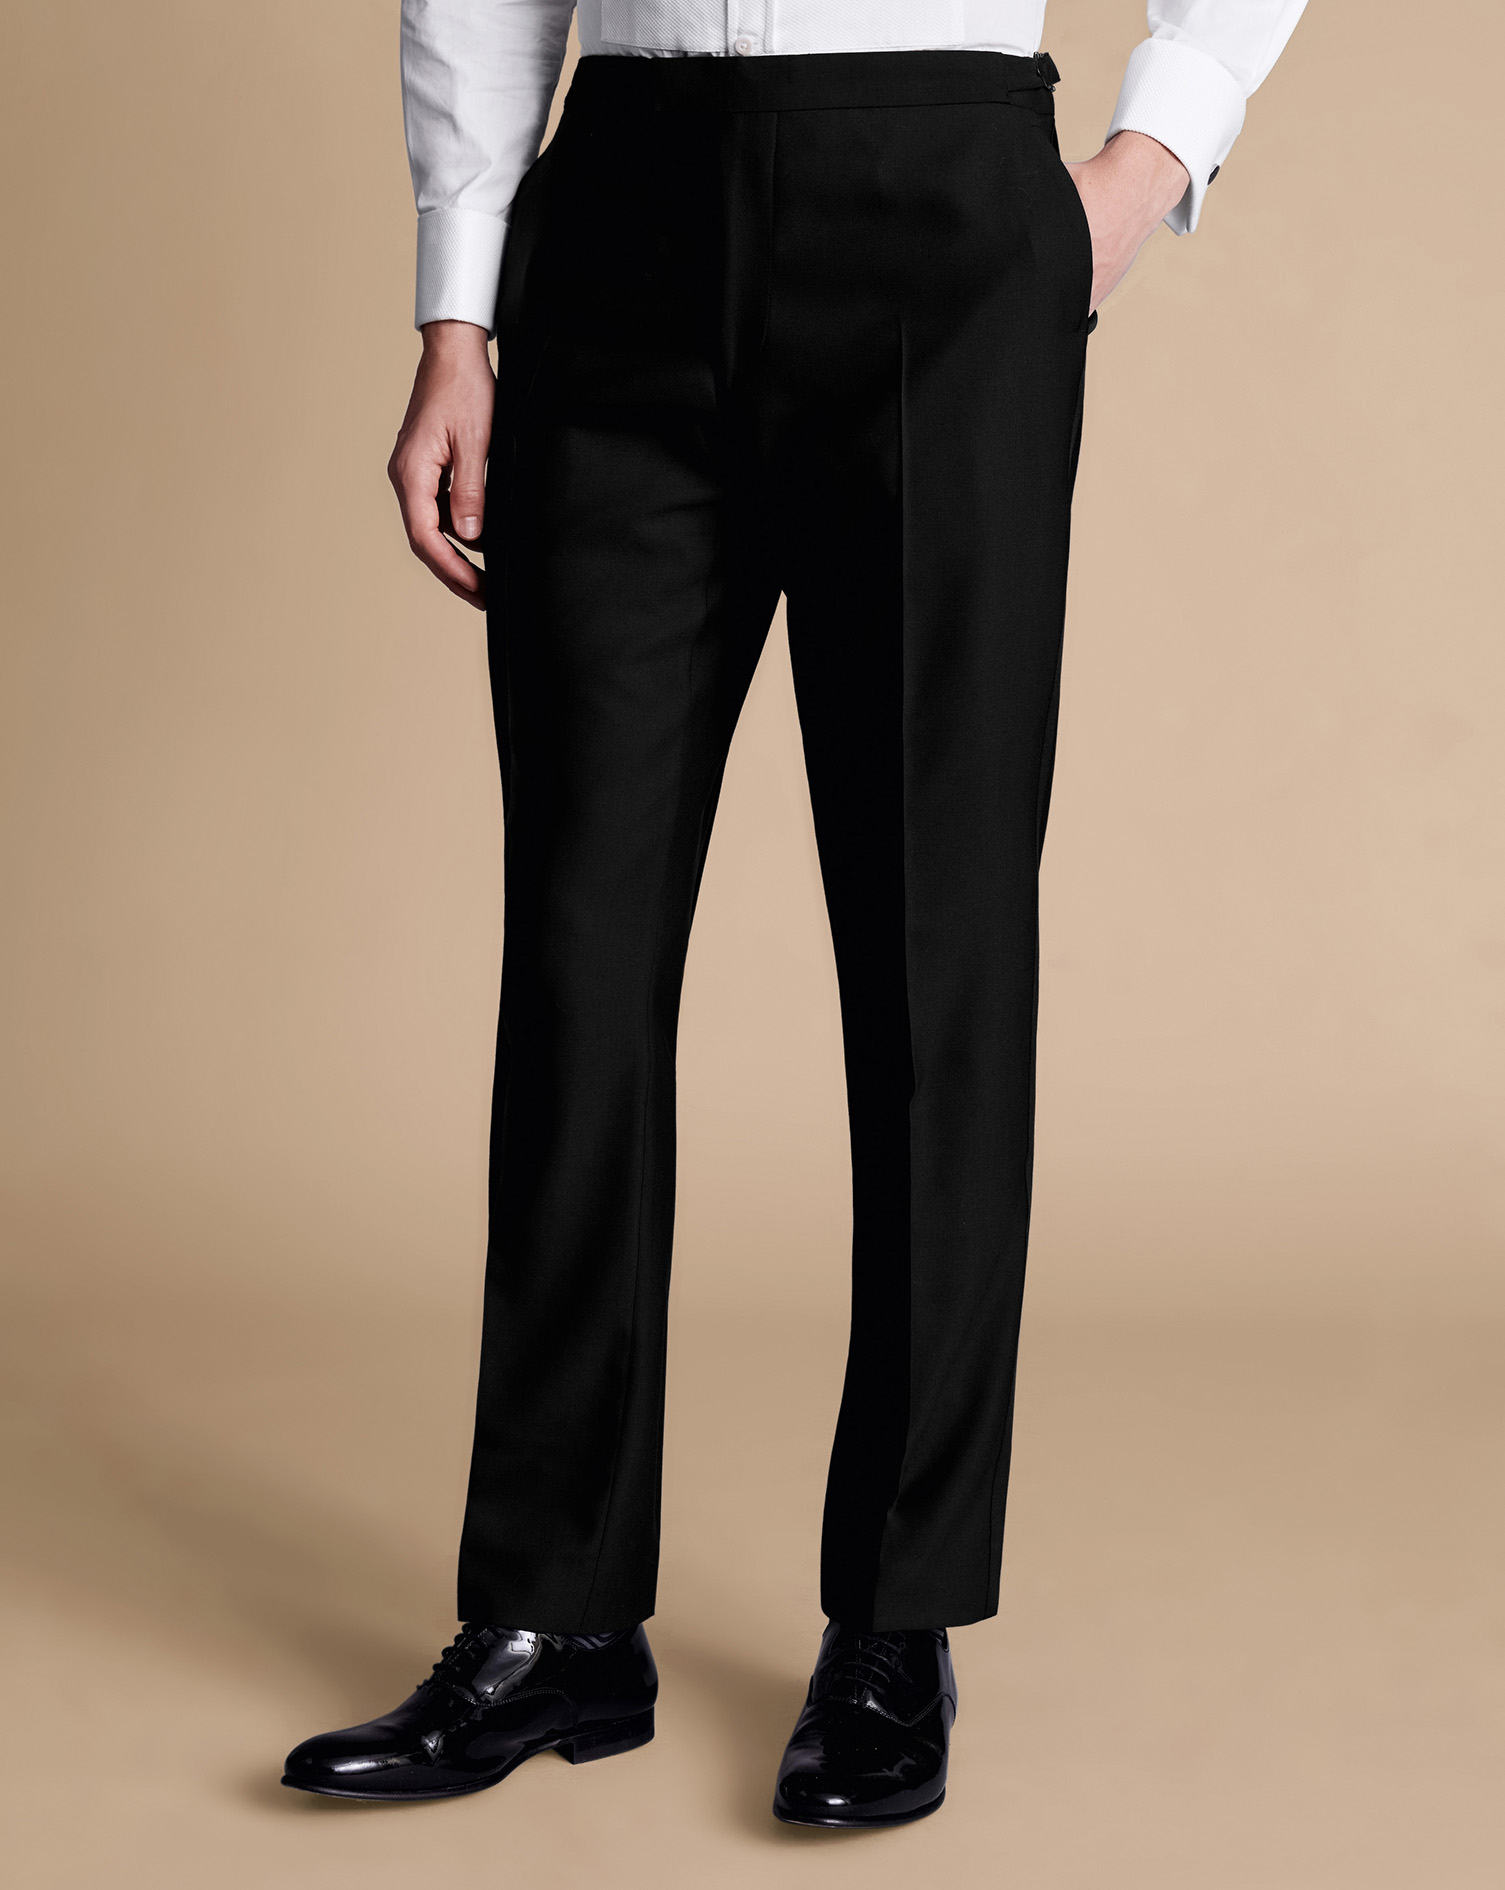 Men's Charles Tyrwhitt Dinner Suit Trousers - Black Size 32/30 Wool
